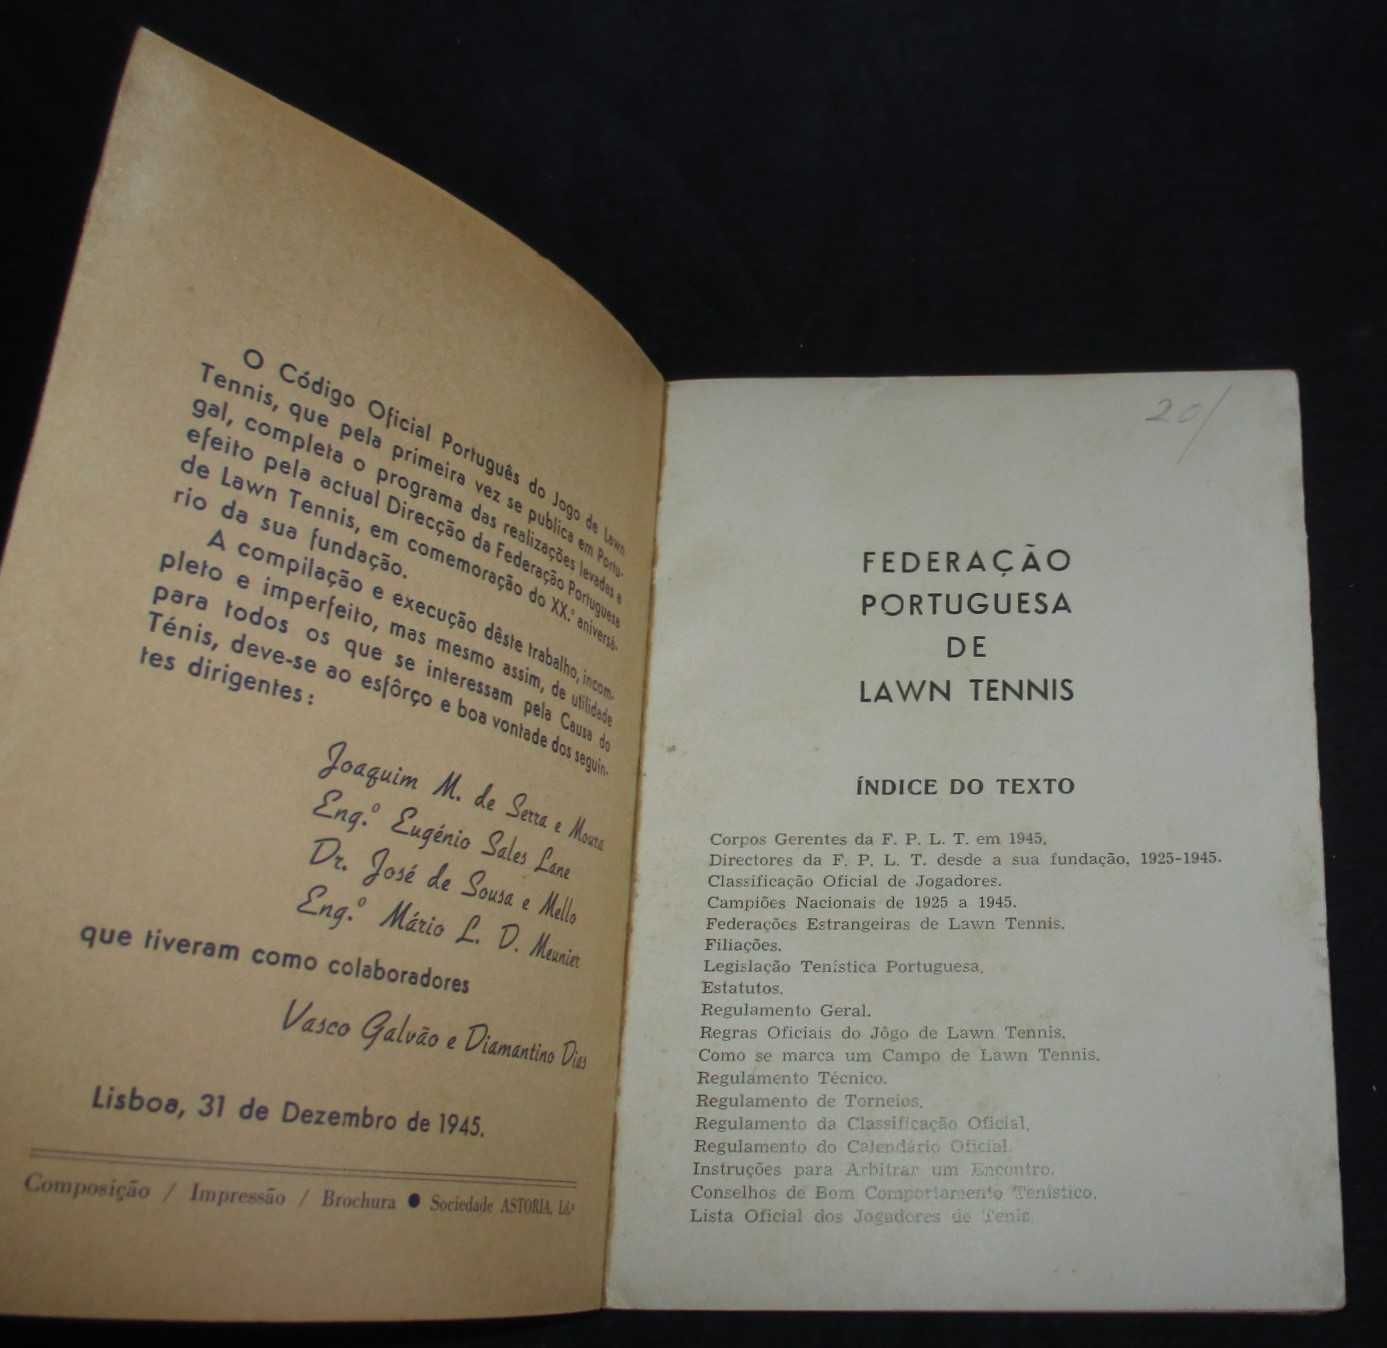 Livro Código Oficial Português do Jogo de Lawn Tennis 1945